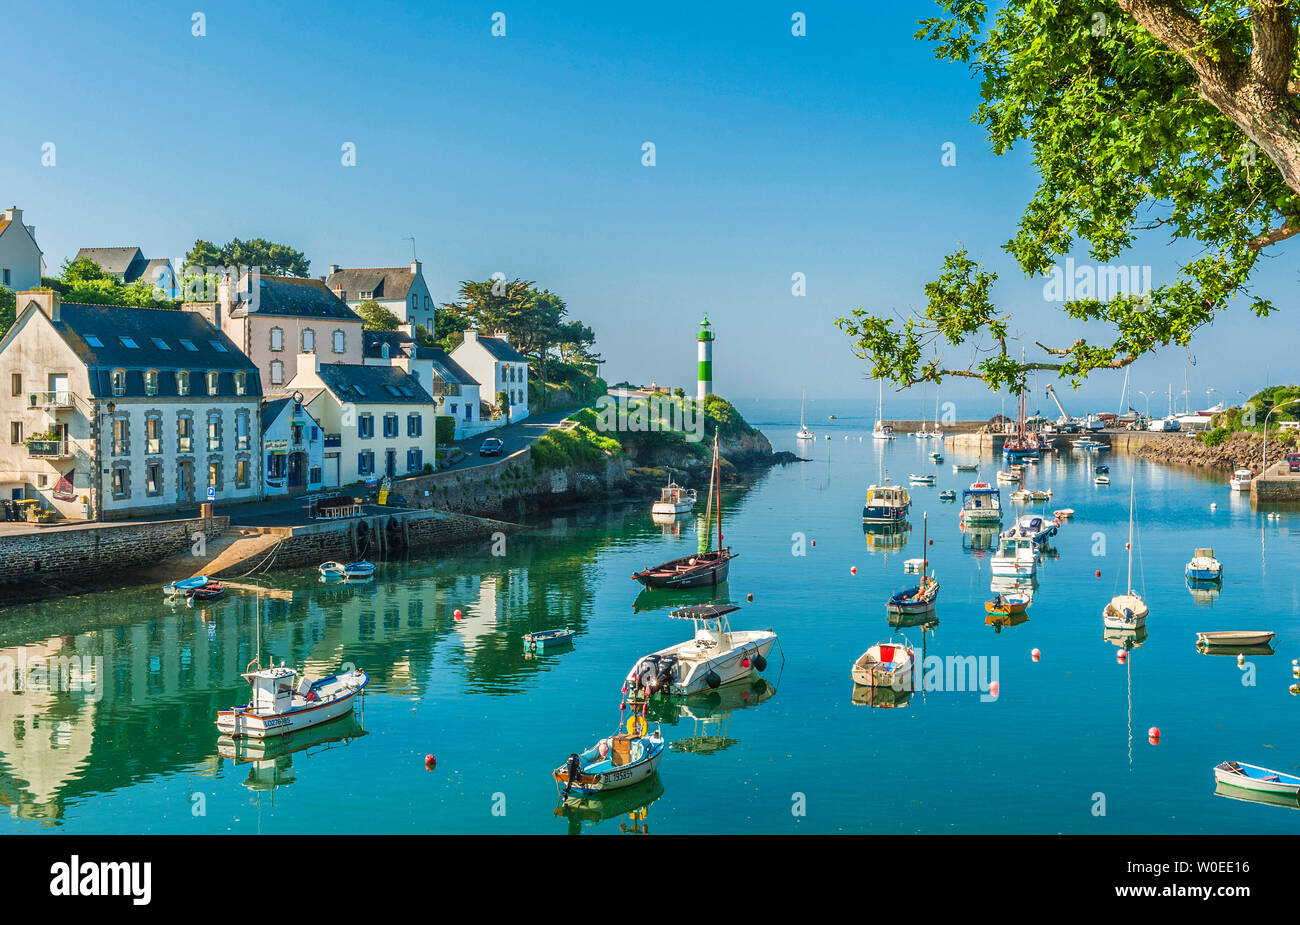 France, Brittany, Clohars-Carnoët, port of Doëlan Stock Photo - Alamy